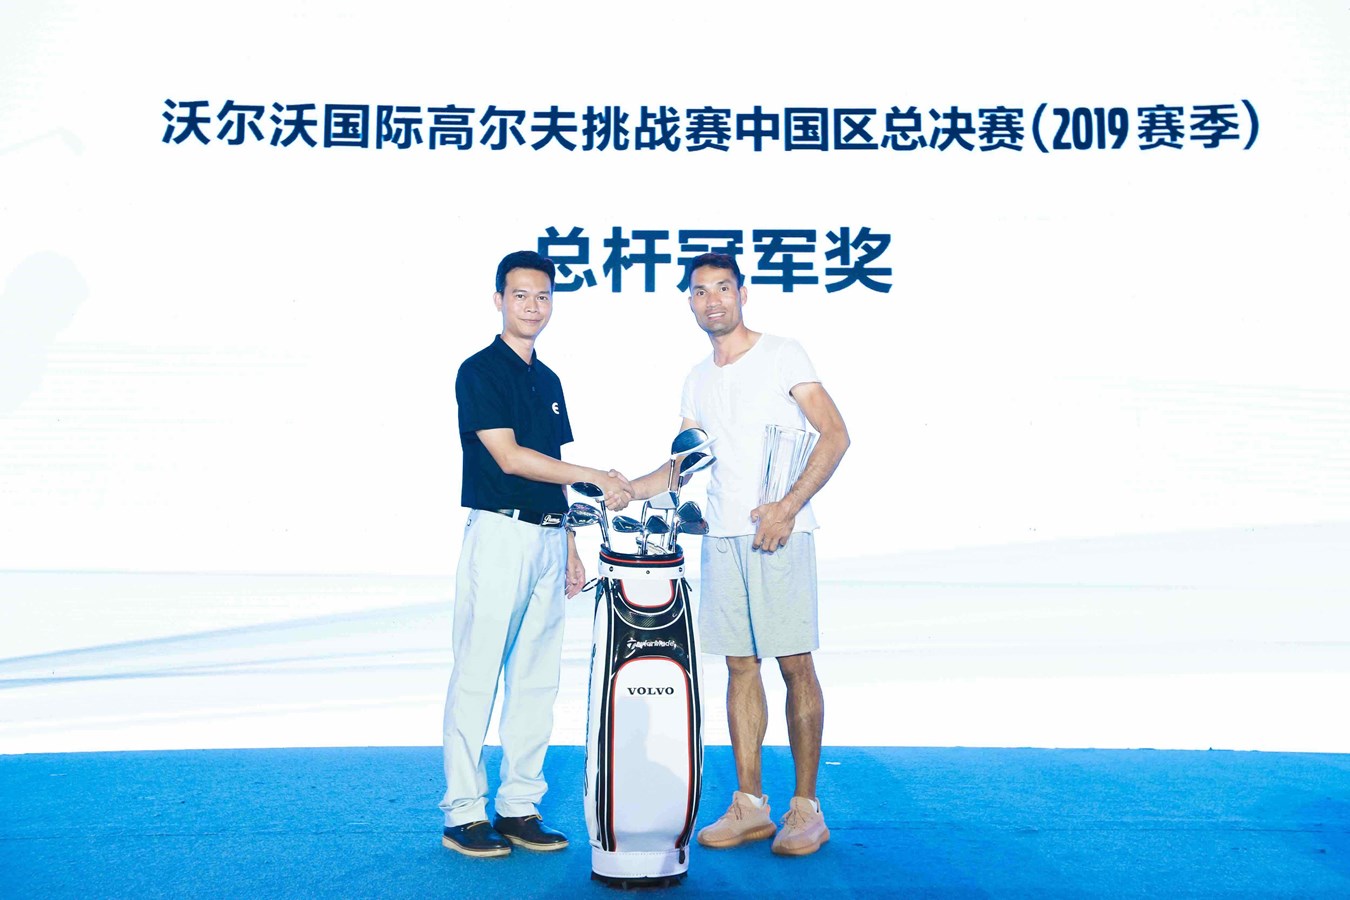 沃尔沃车主谭文顺获得沃尔沃国际高尔夫挑战赛中国区总决赛（2019赛季）总杆冠军